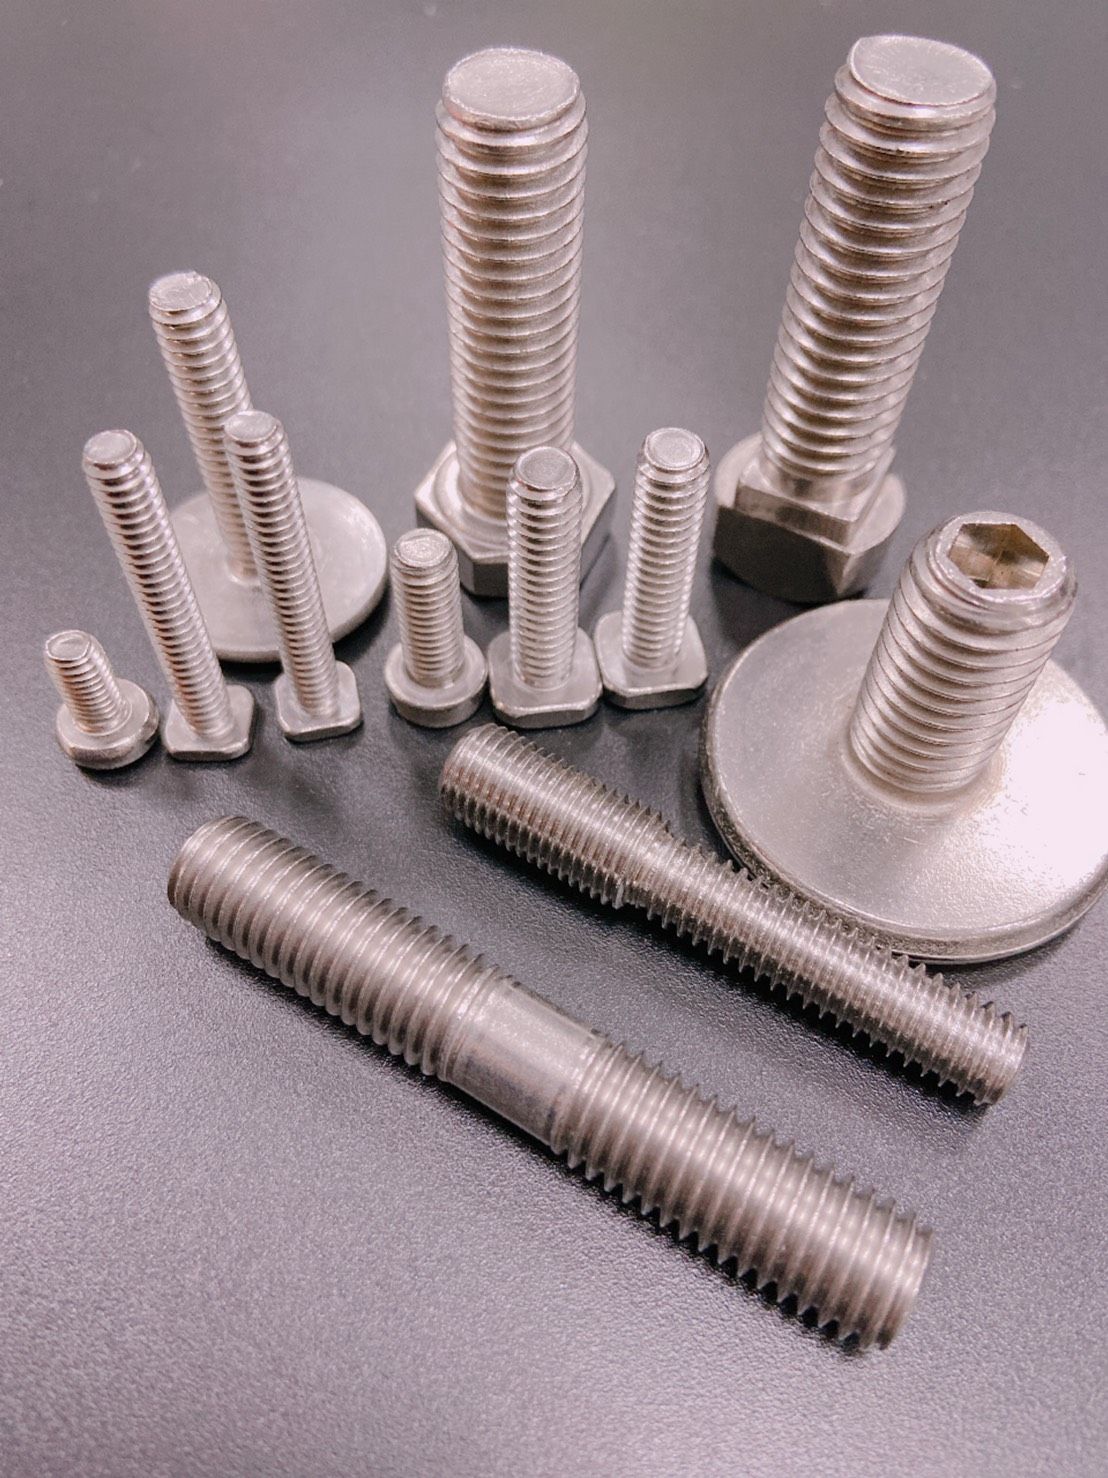 機械牙螺絲 螺栓 所有產品可依照客戶圖面生產 製程能力範圍M1.6~M16 在所有機件中，機械螺紋可以說是應用最廣泛
且使用最多的牙型， 日常生活中之用品及在機械工業中
隨時隨處都可以看到螺紋的蹤跡，所以機械牙螺絲可說是機件
中最重要的零件之一。